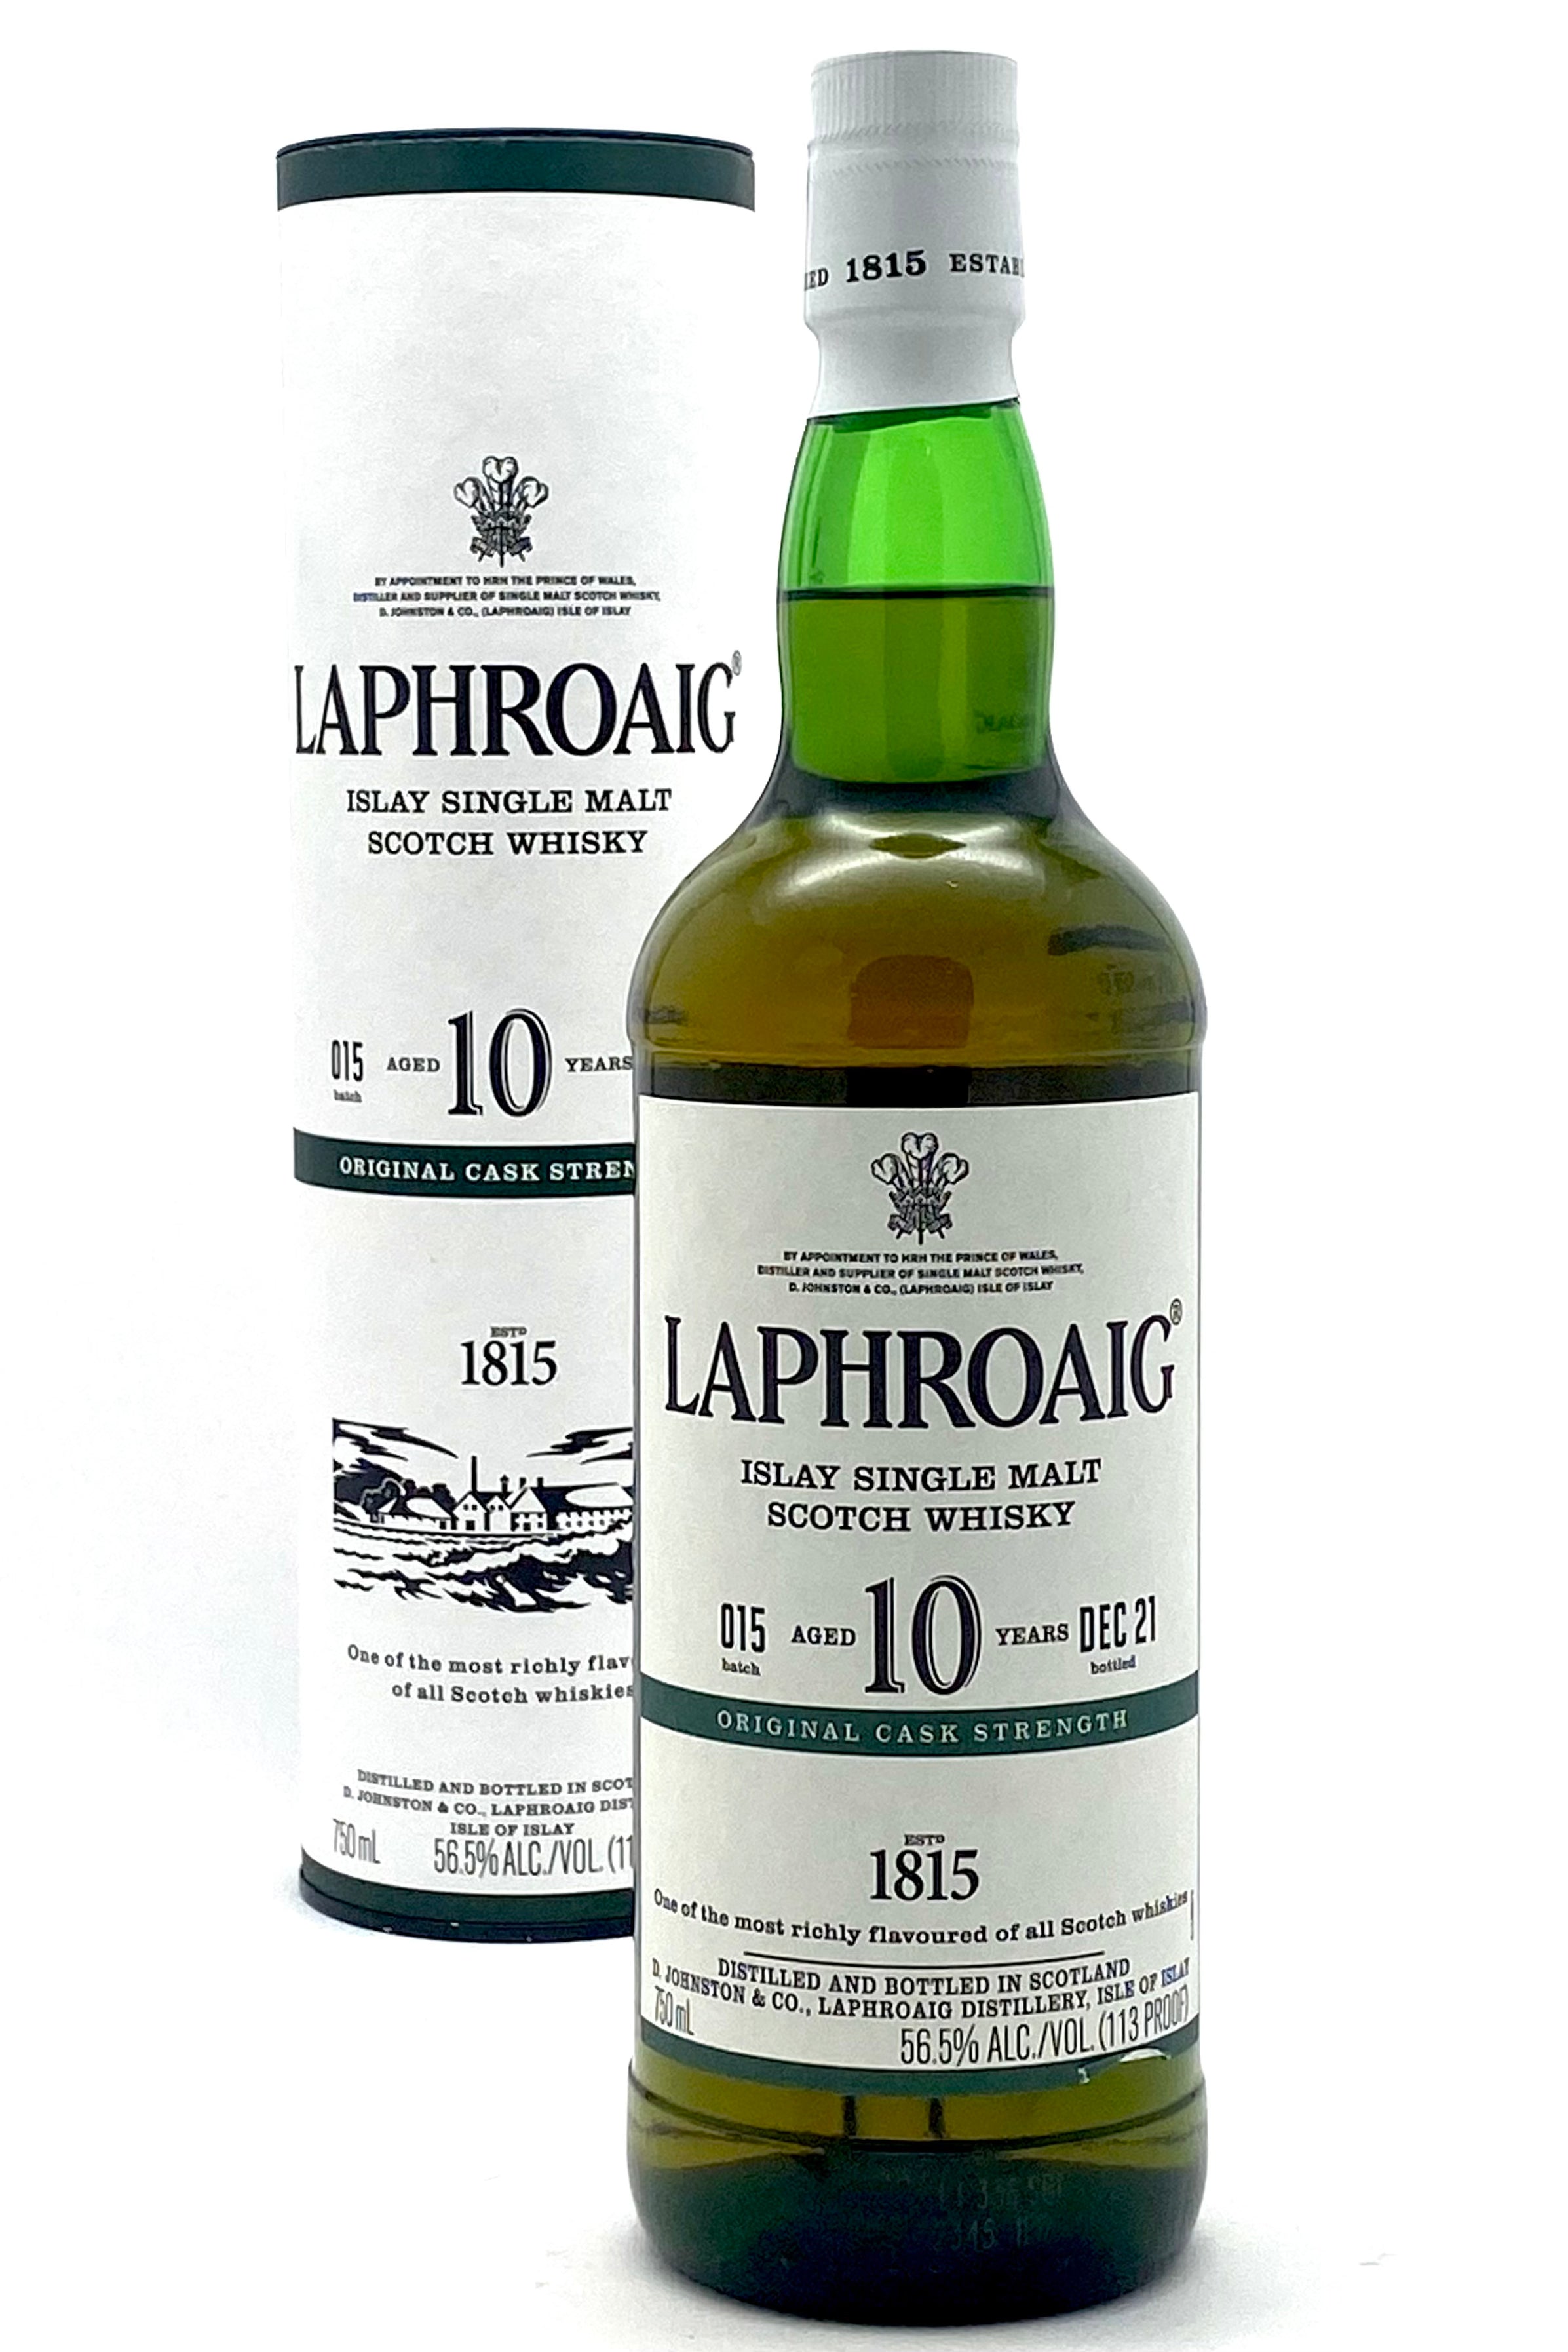 Laphroaig Islay Single Malt Scotch Whisky 10 Yr. 750ml.